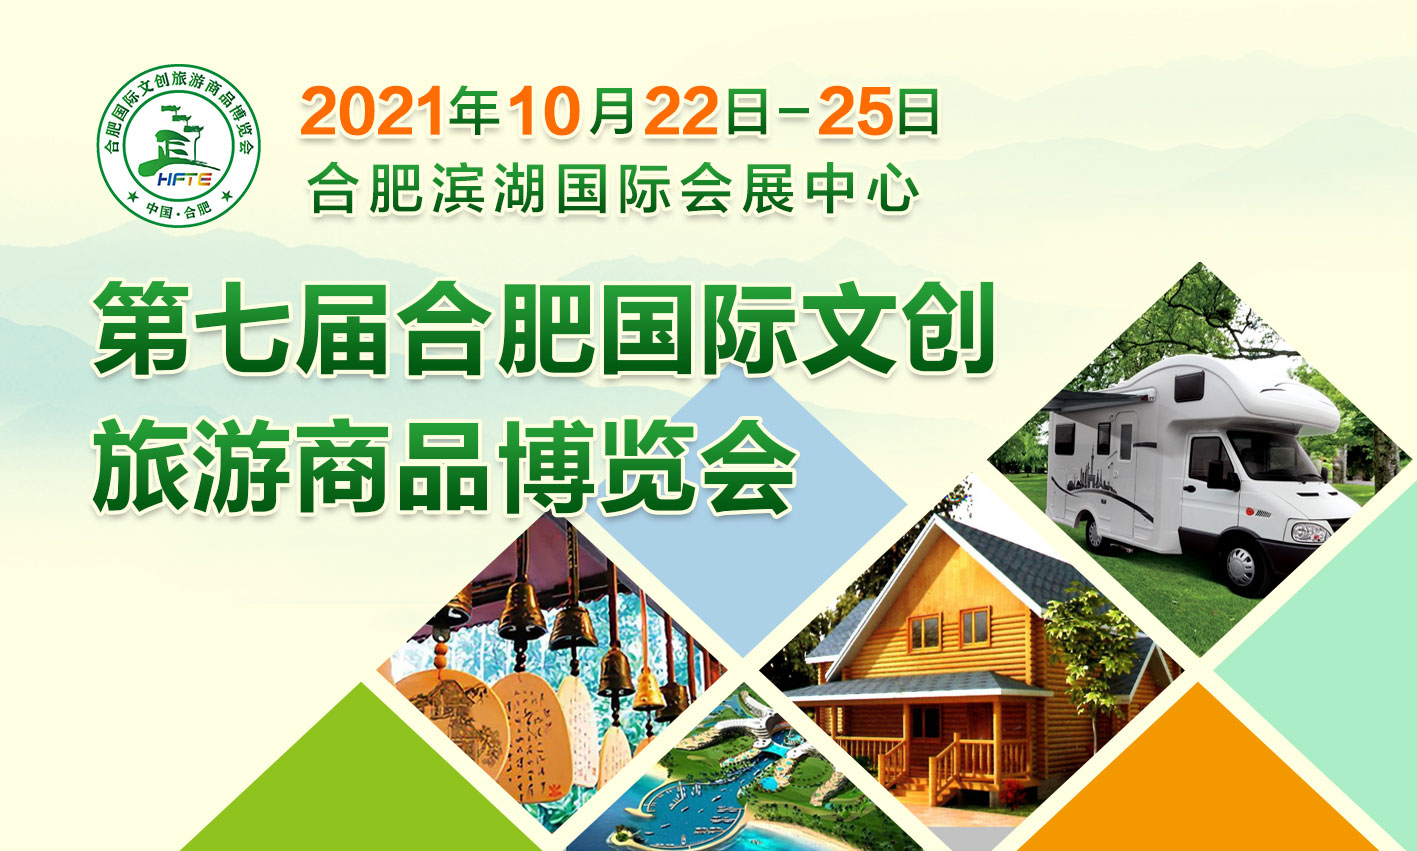 2021第七屆合肥國際文創旅遊商品博覽會(合肥旅博會)